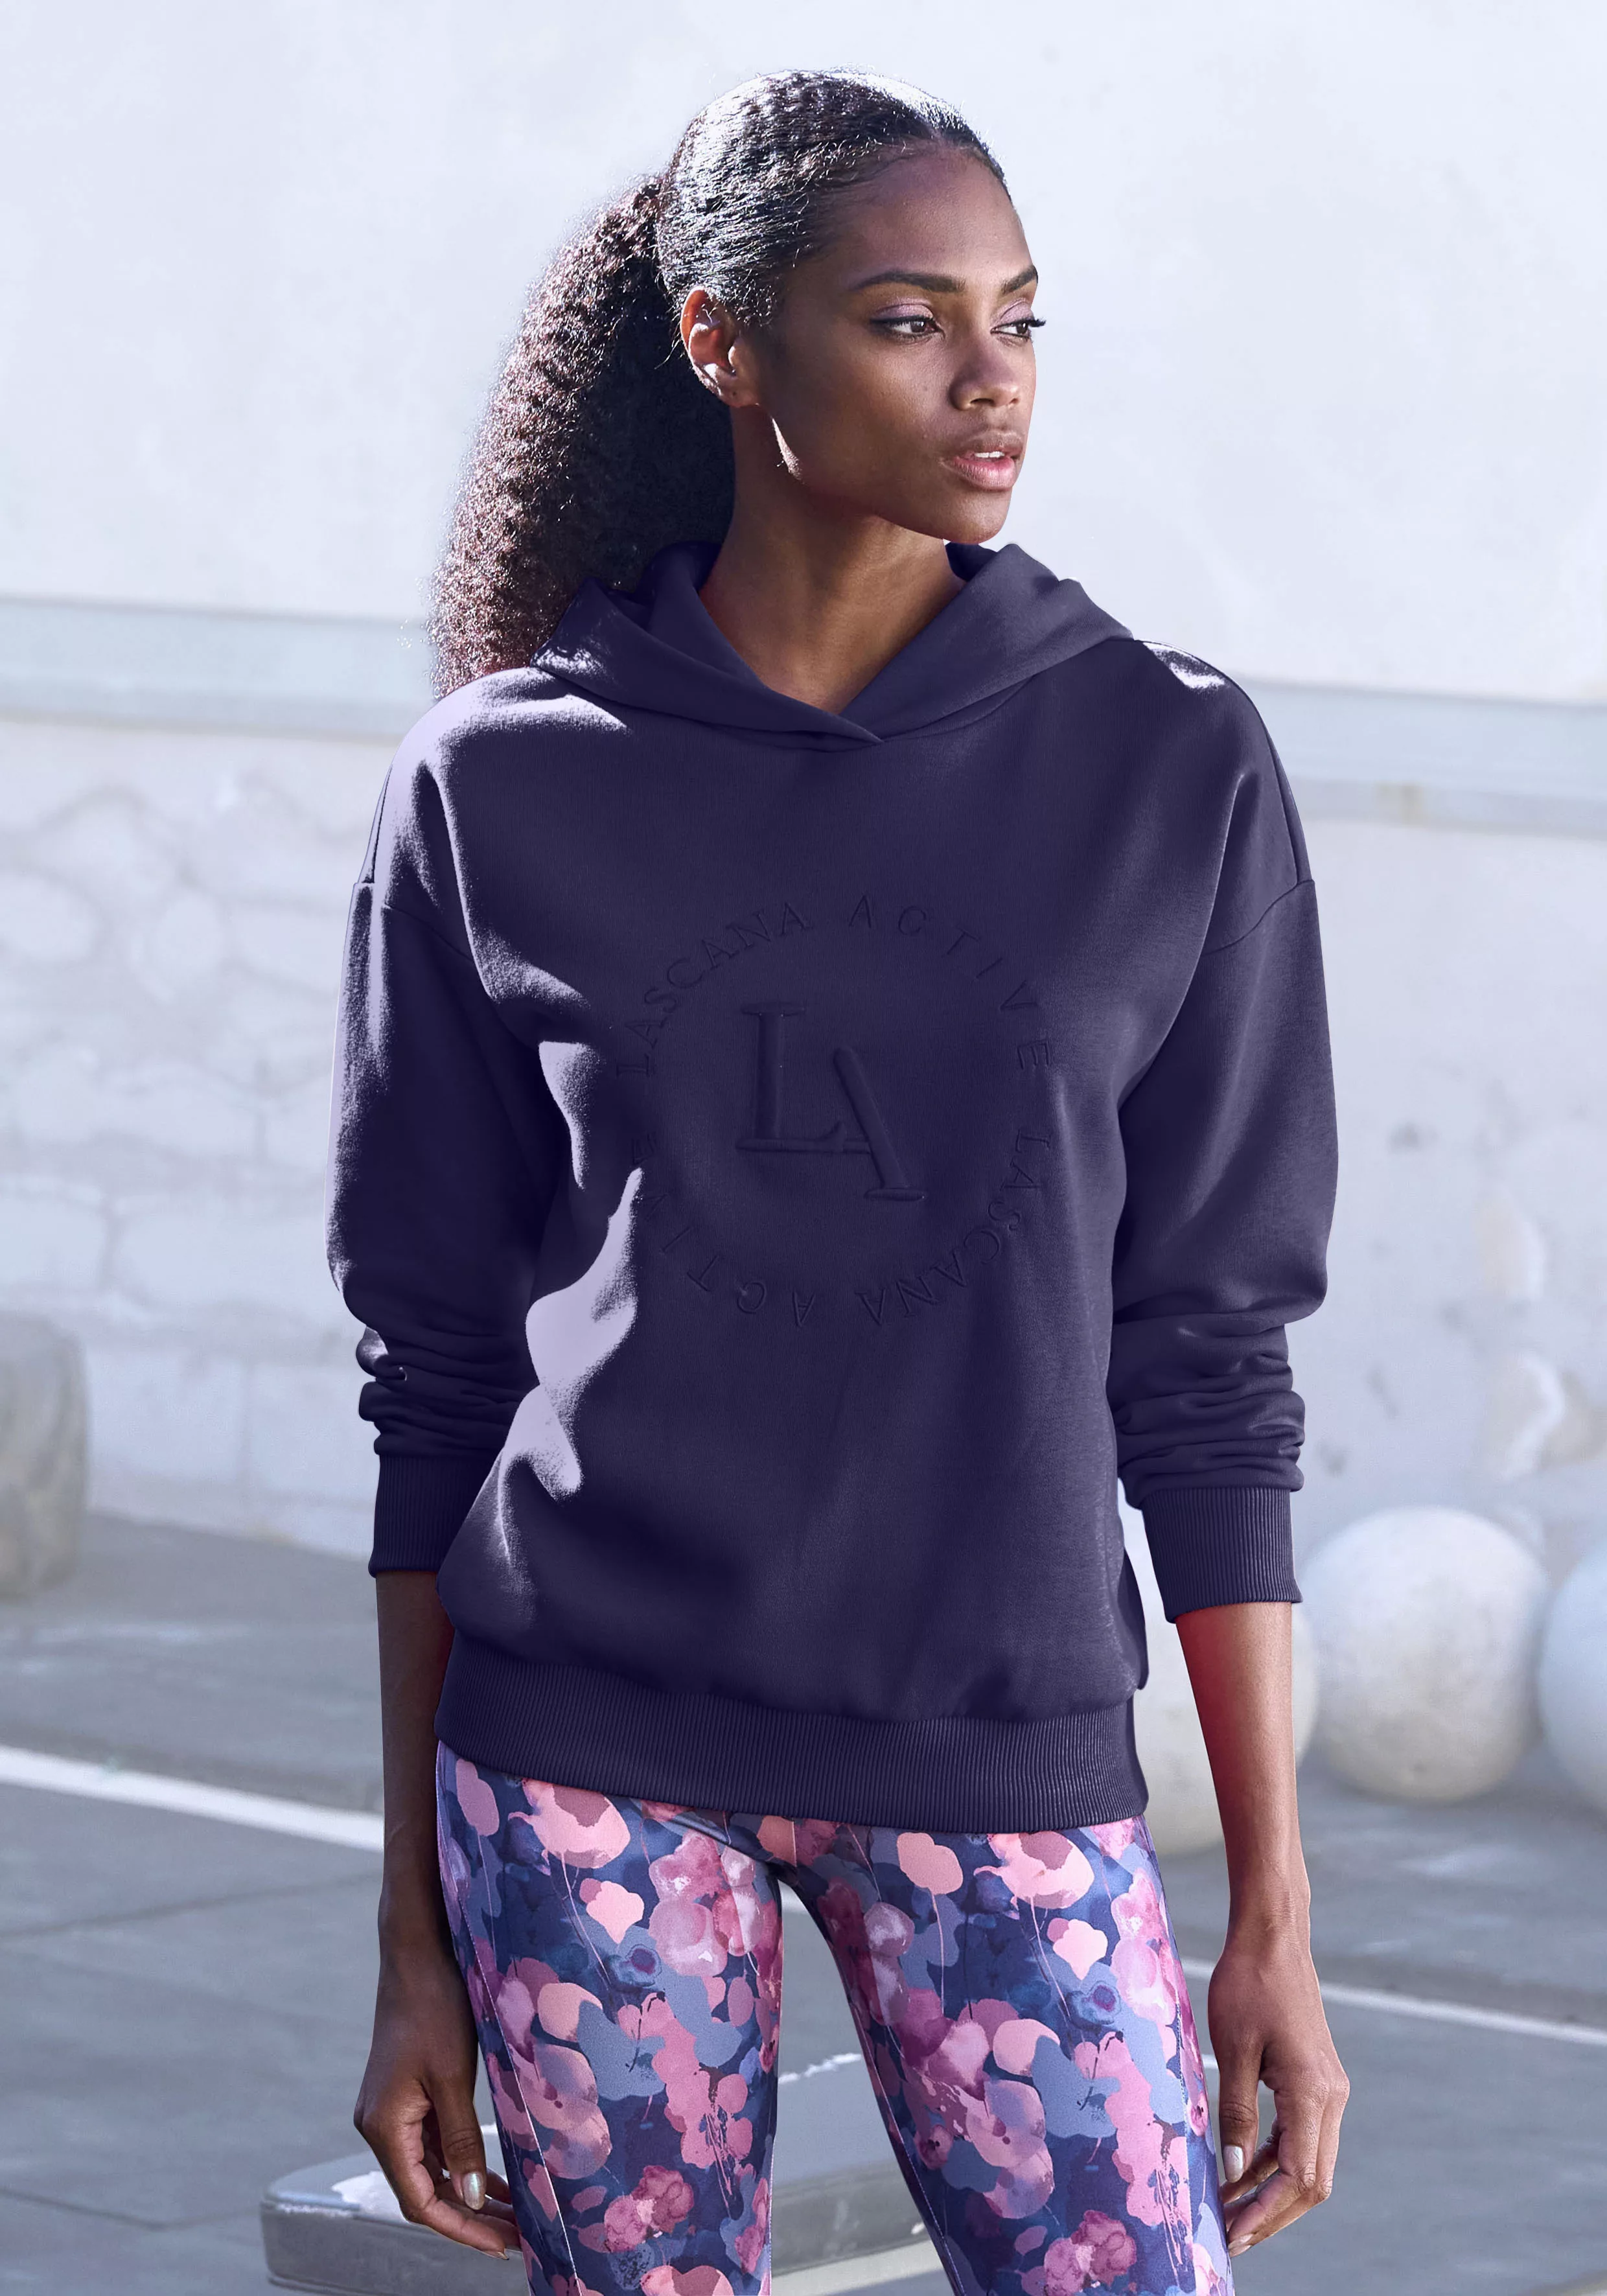 LASCANA ACTIVE Kapuzensweatshirt - Performance Hoodie mit runder Logosticke günstig online kaufen